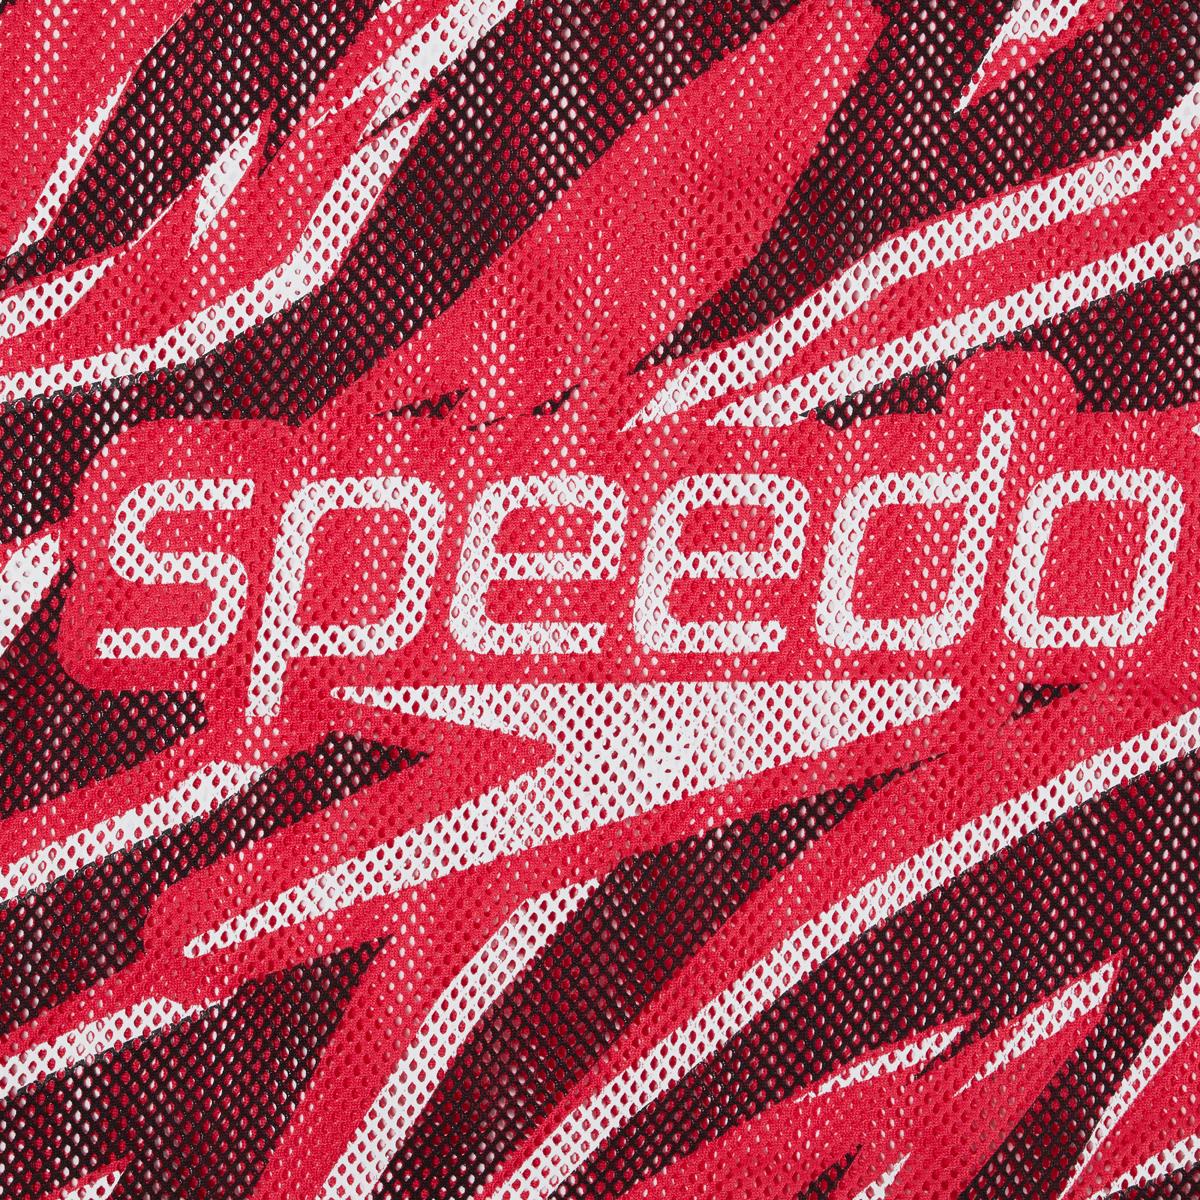 Speedo Printed Mesh Bag XU - Siren Red/ Black/ White